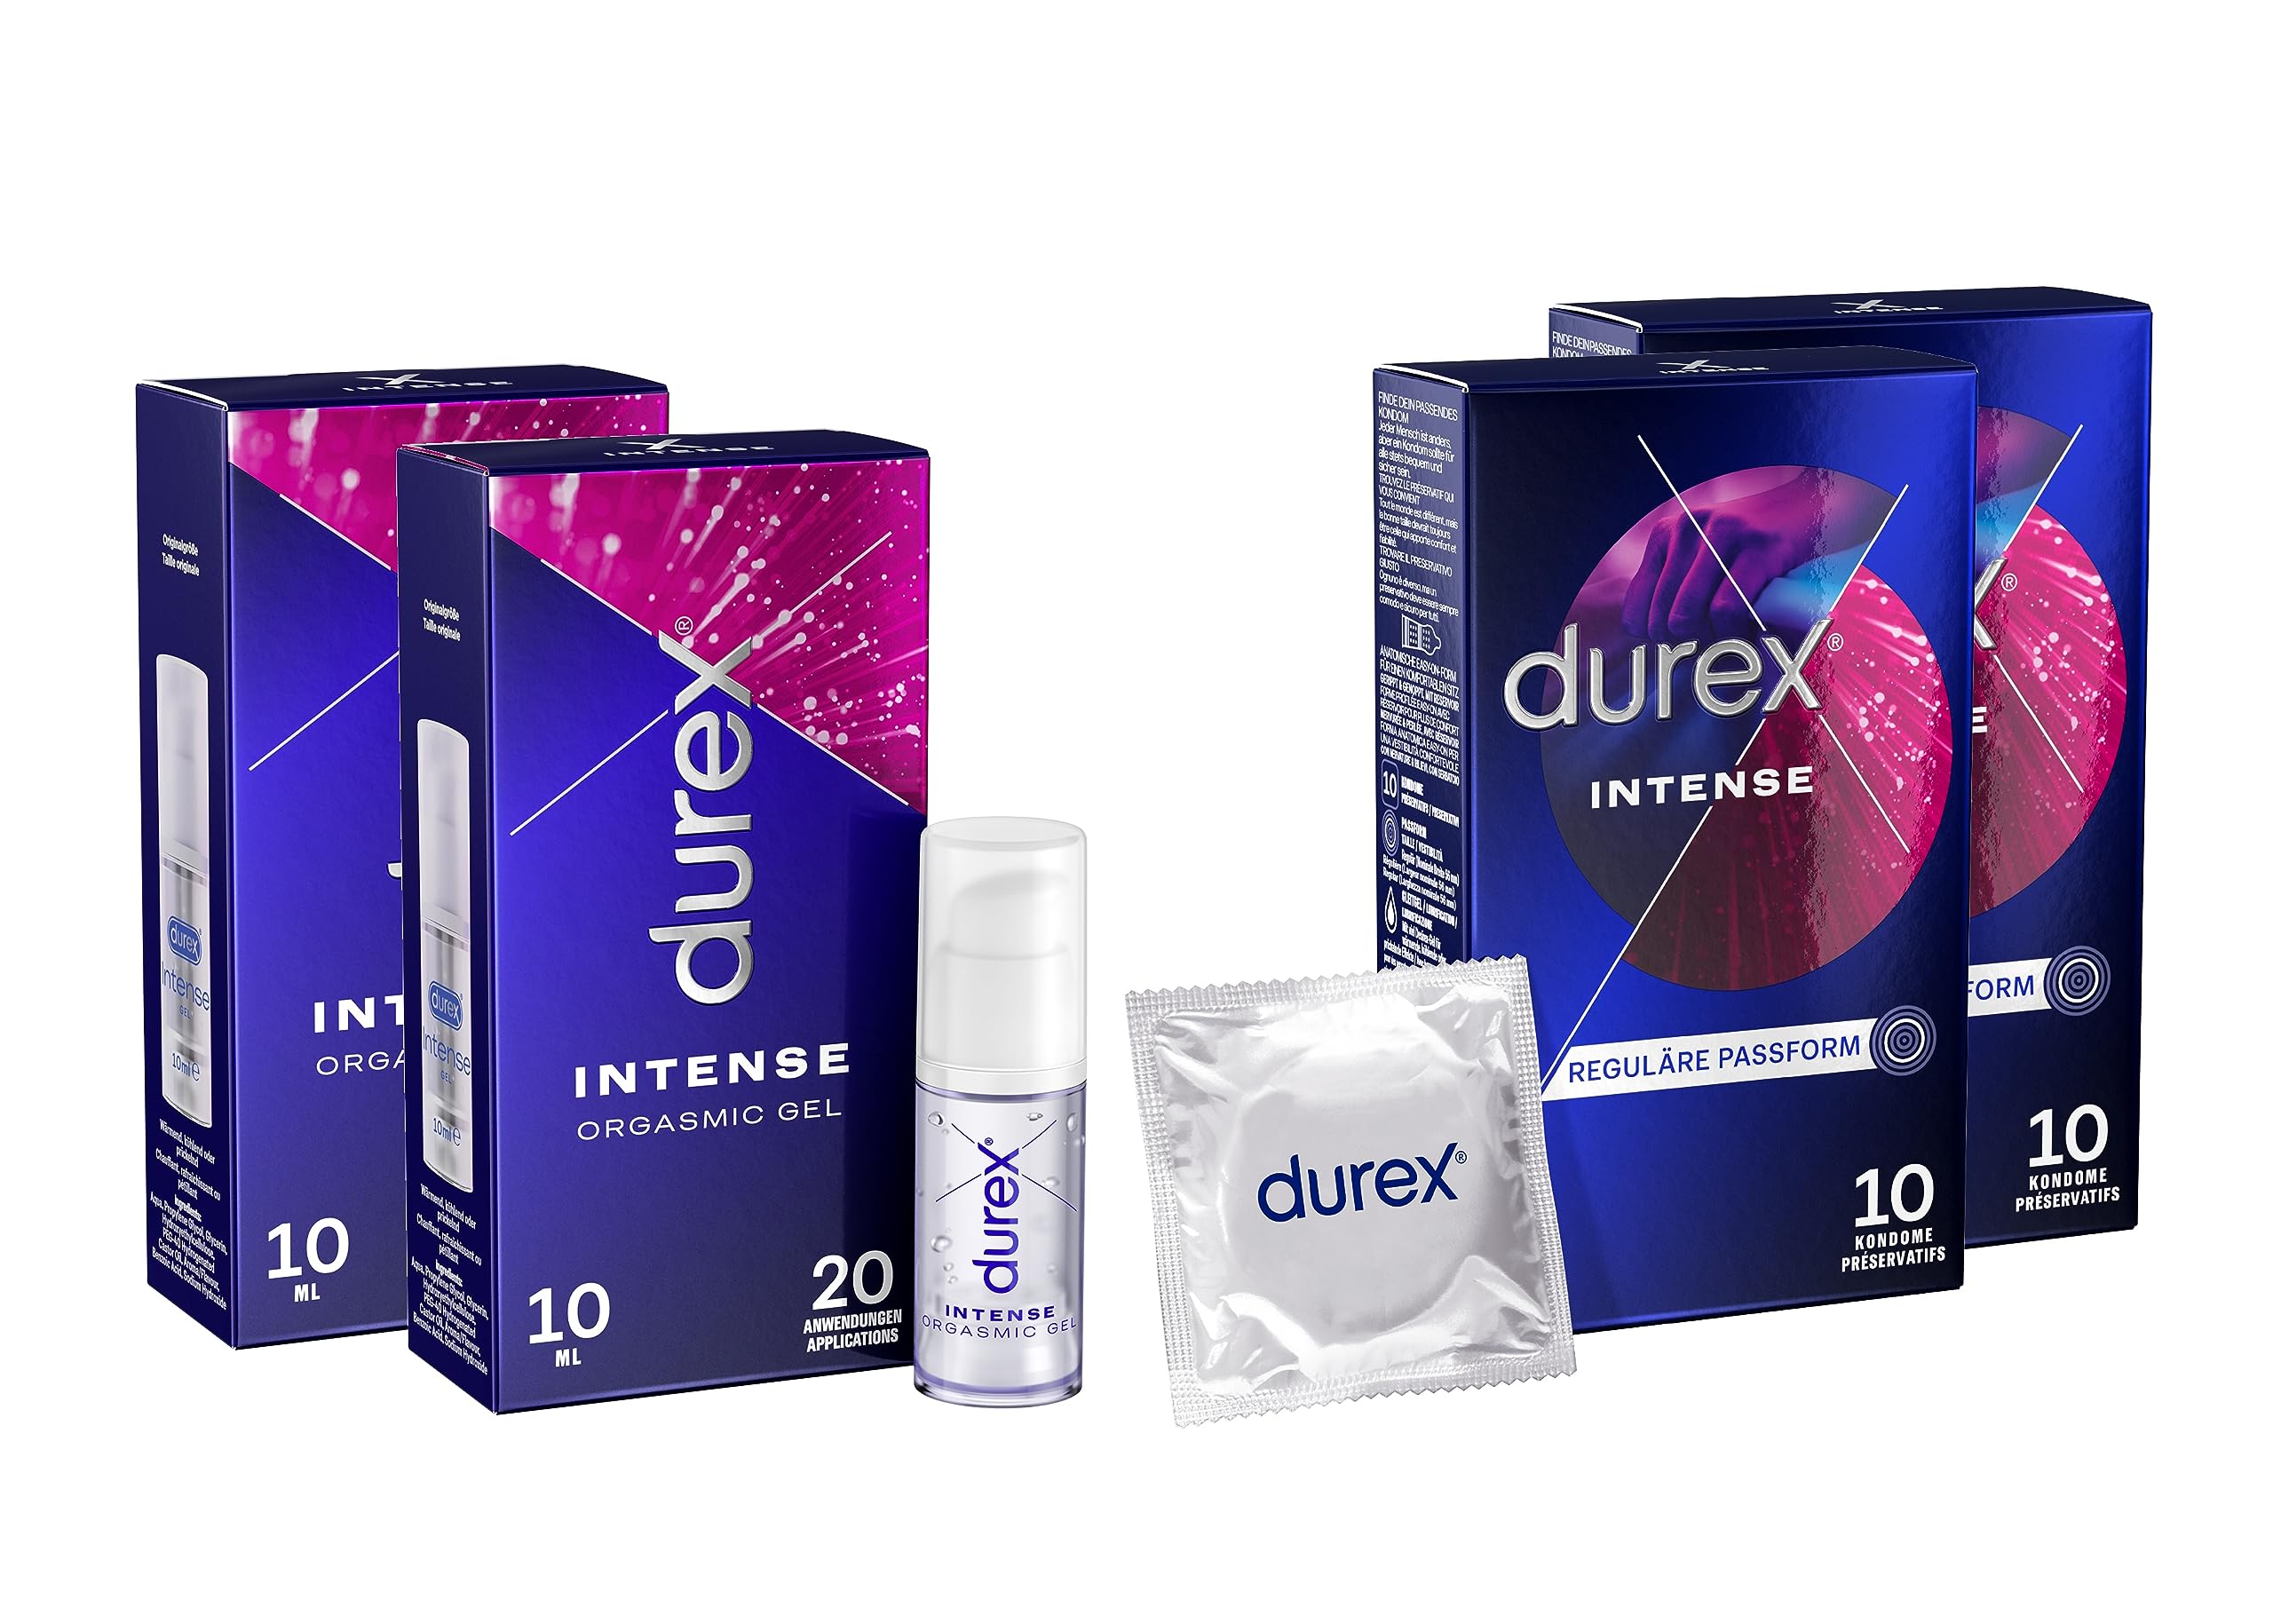 Orgasmic Vorteilsset mit Stimulationsgel und Kondomen Durex Intense Orgasmic Gel 10 ml + Durex Intense Orgasmic Kondome 10 Stück